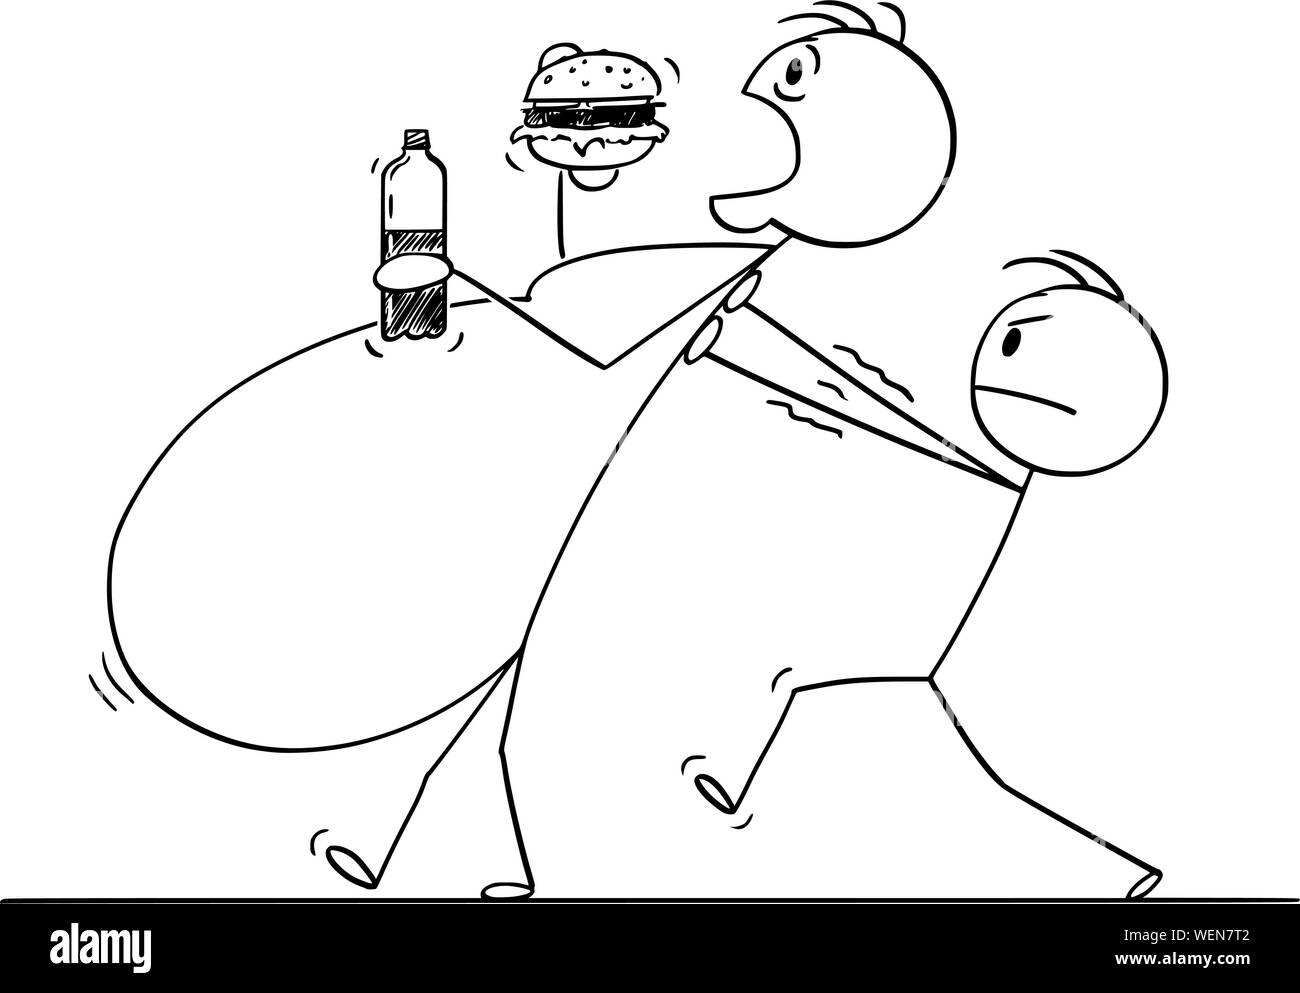 Vector cartoon stick figura disegno illustrazione concettuale del sovrappeso, morboso obesi o fat man mangiare cibo malsano mentre un altro uomo è aiutandolo a camminare. Illustrazione Vettoriale